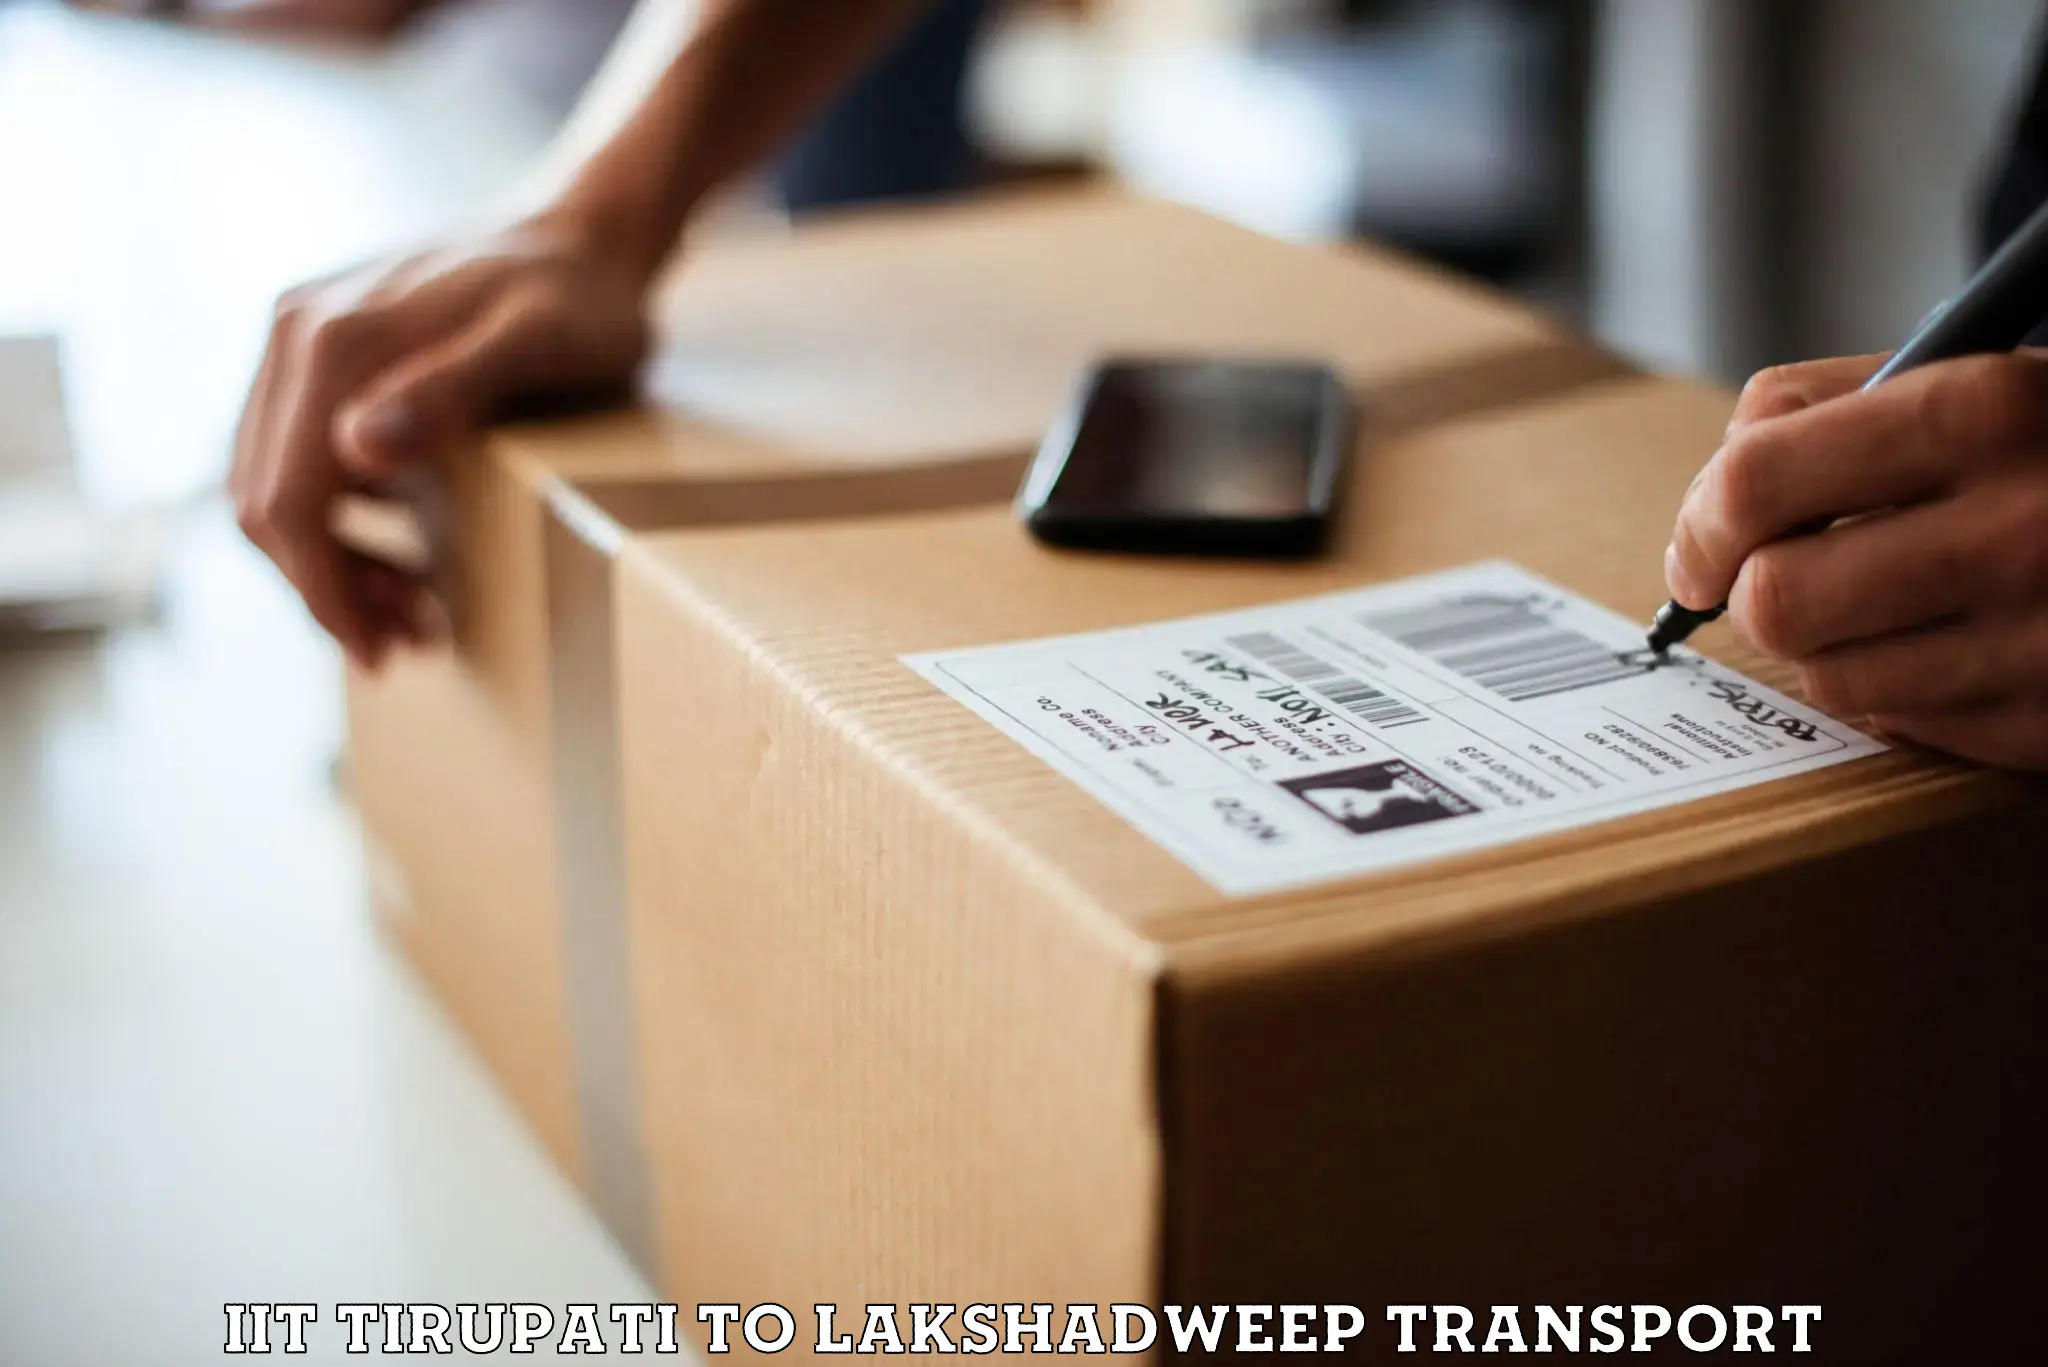 Two wheeler transport services IIT Tirupati to Lakshadweep